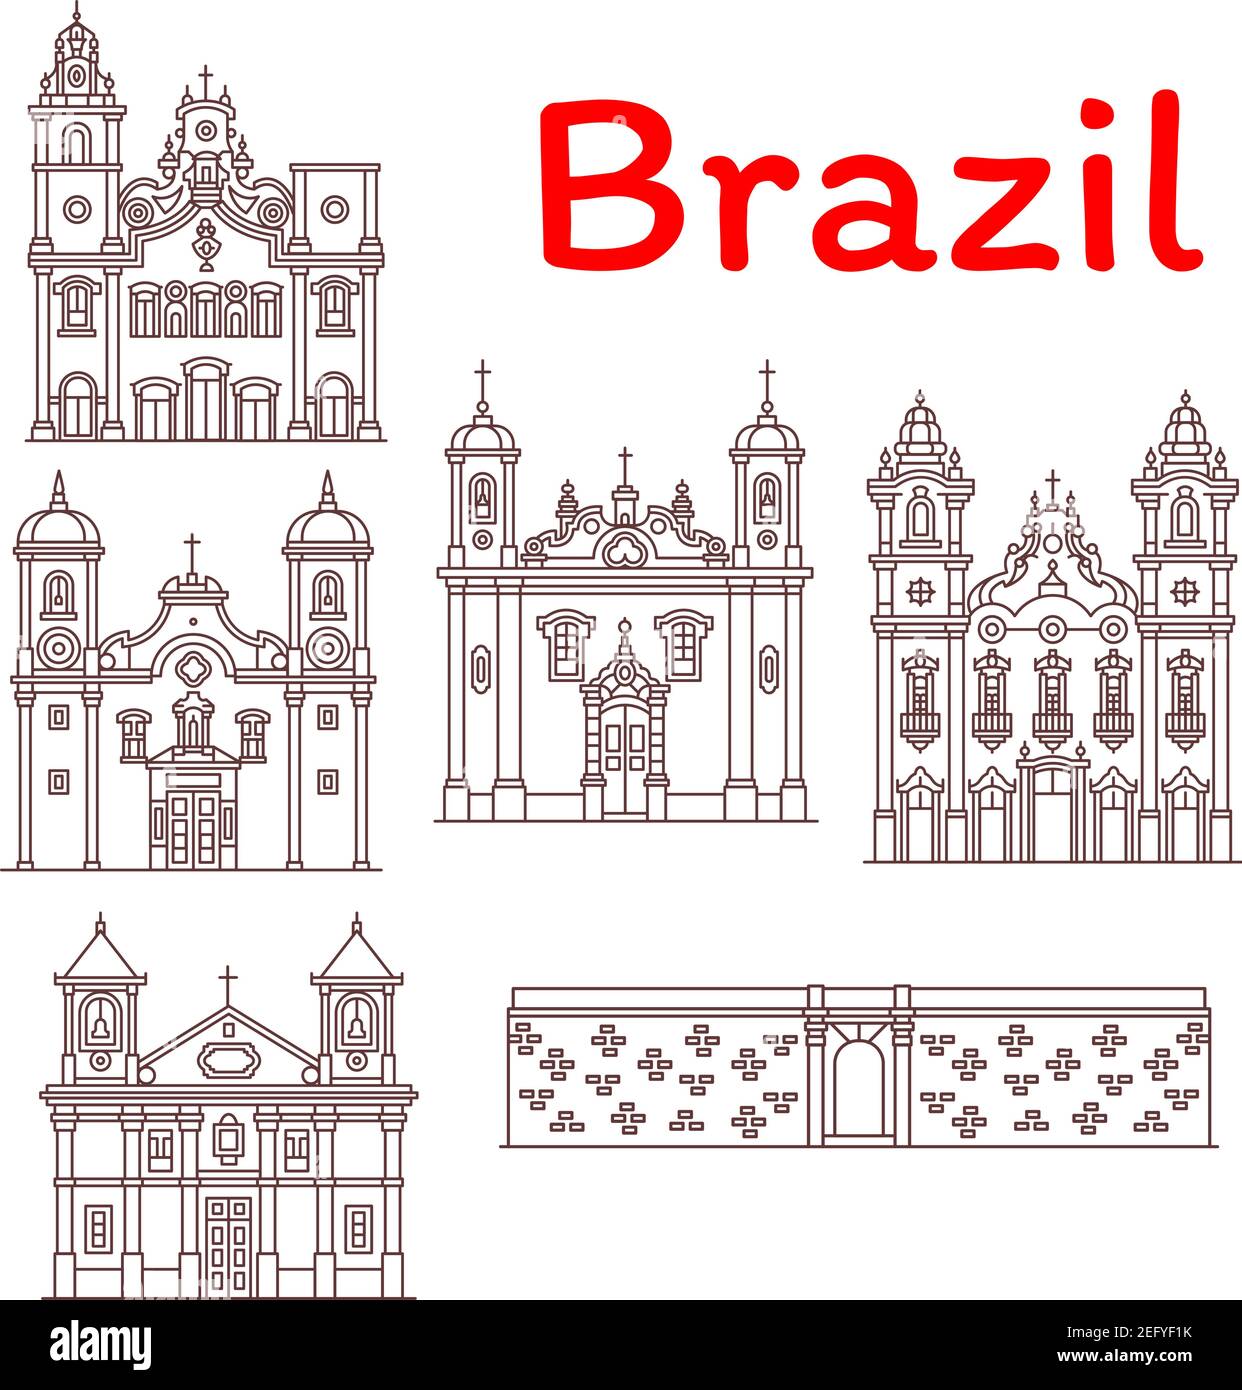 Monumenti architettonici brasiliani e famose icone della facciata dell'edificio. Insieme vettoriale del Forte brasiliano di Castello, chiese e cattedrali a Rio de Janeiro, Illustrazione Vettoriale